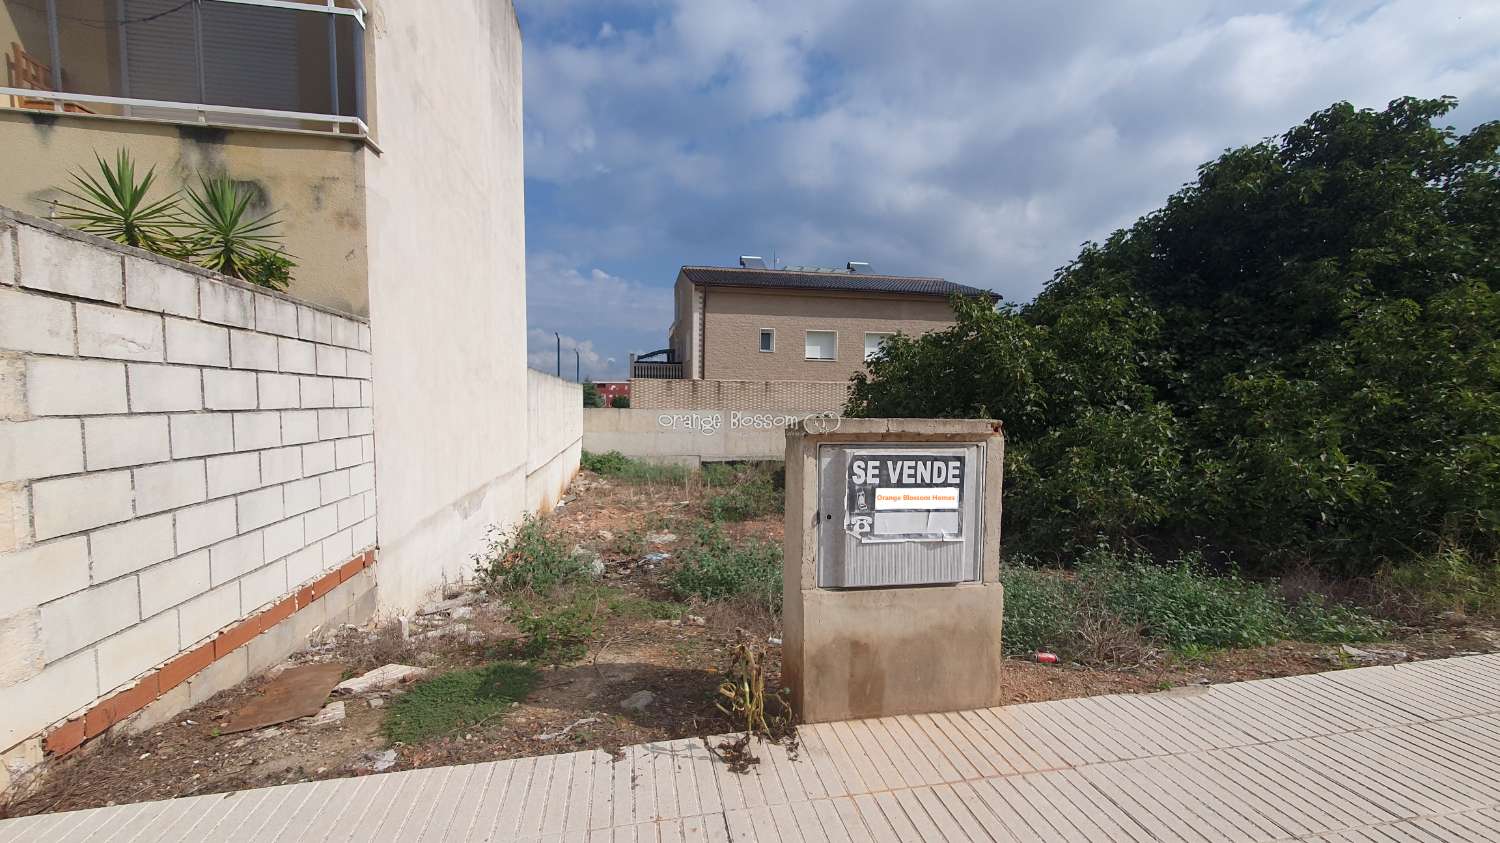 Building area for sale in Villalonga